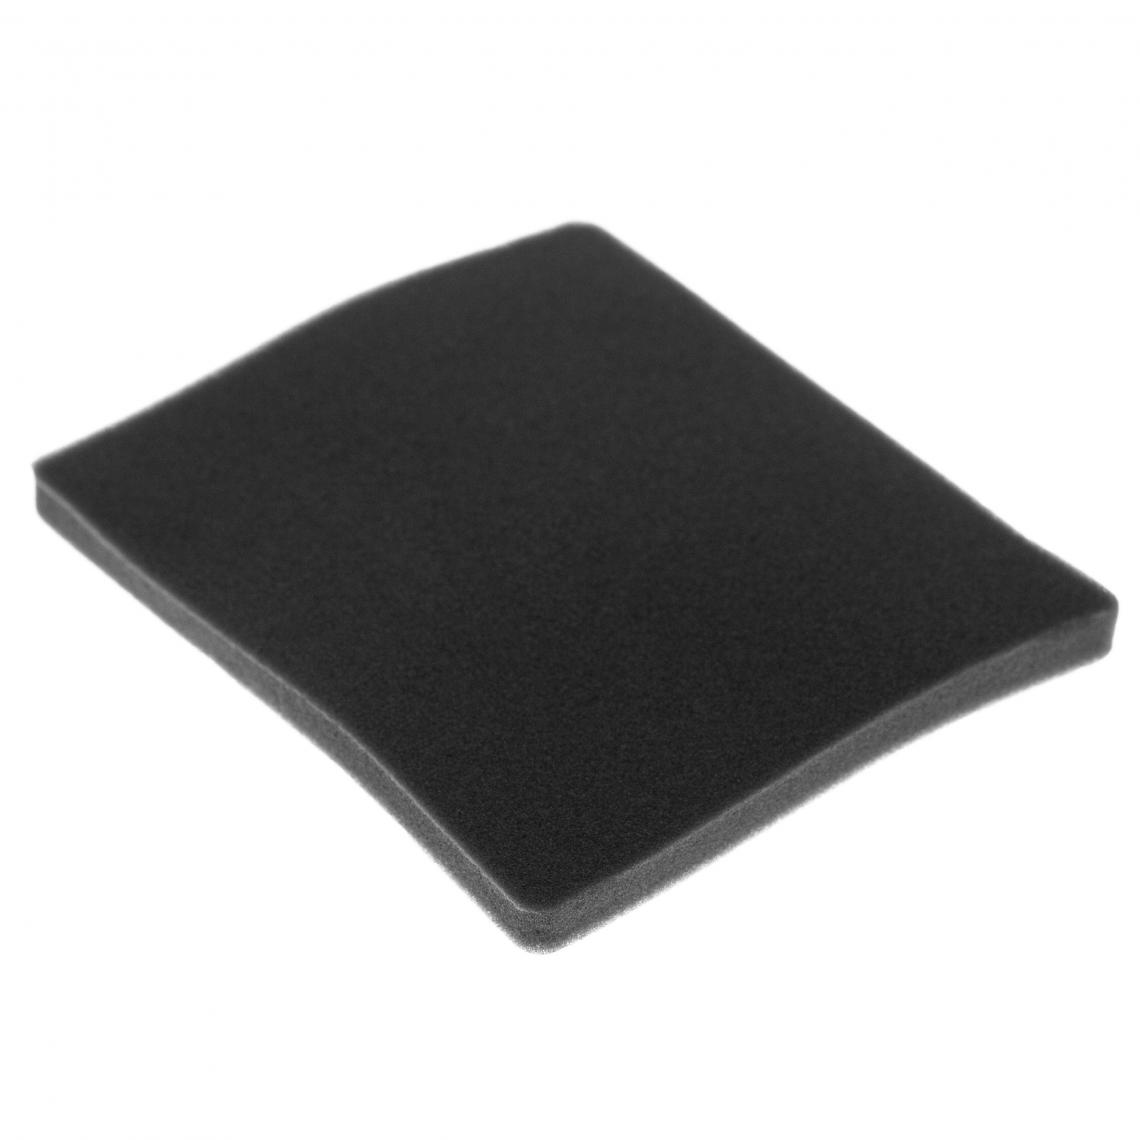 Vhbw - vhbw Filtre compatible avec Electrolux ZAM6230 (910288771) aspirateur - filtre de sortie d'air (filtre éponge), noir - Accessoire entretien des sols